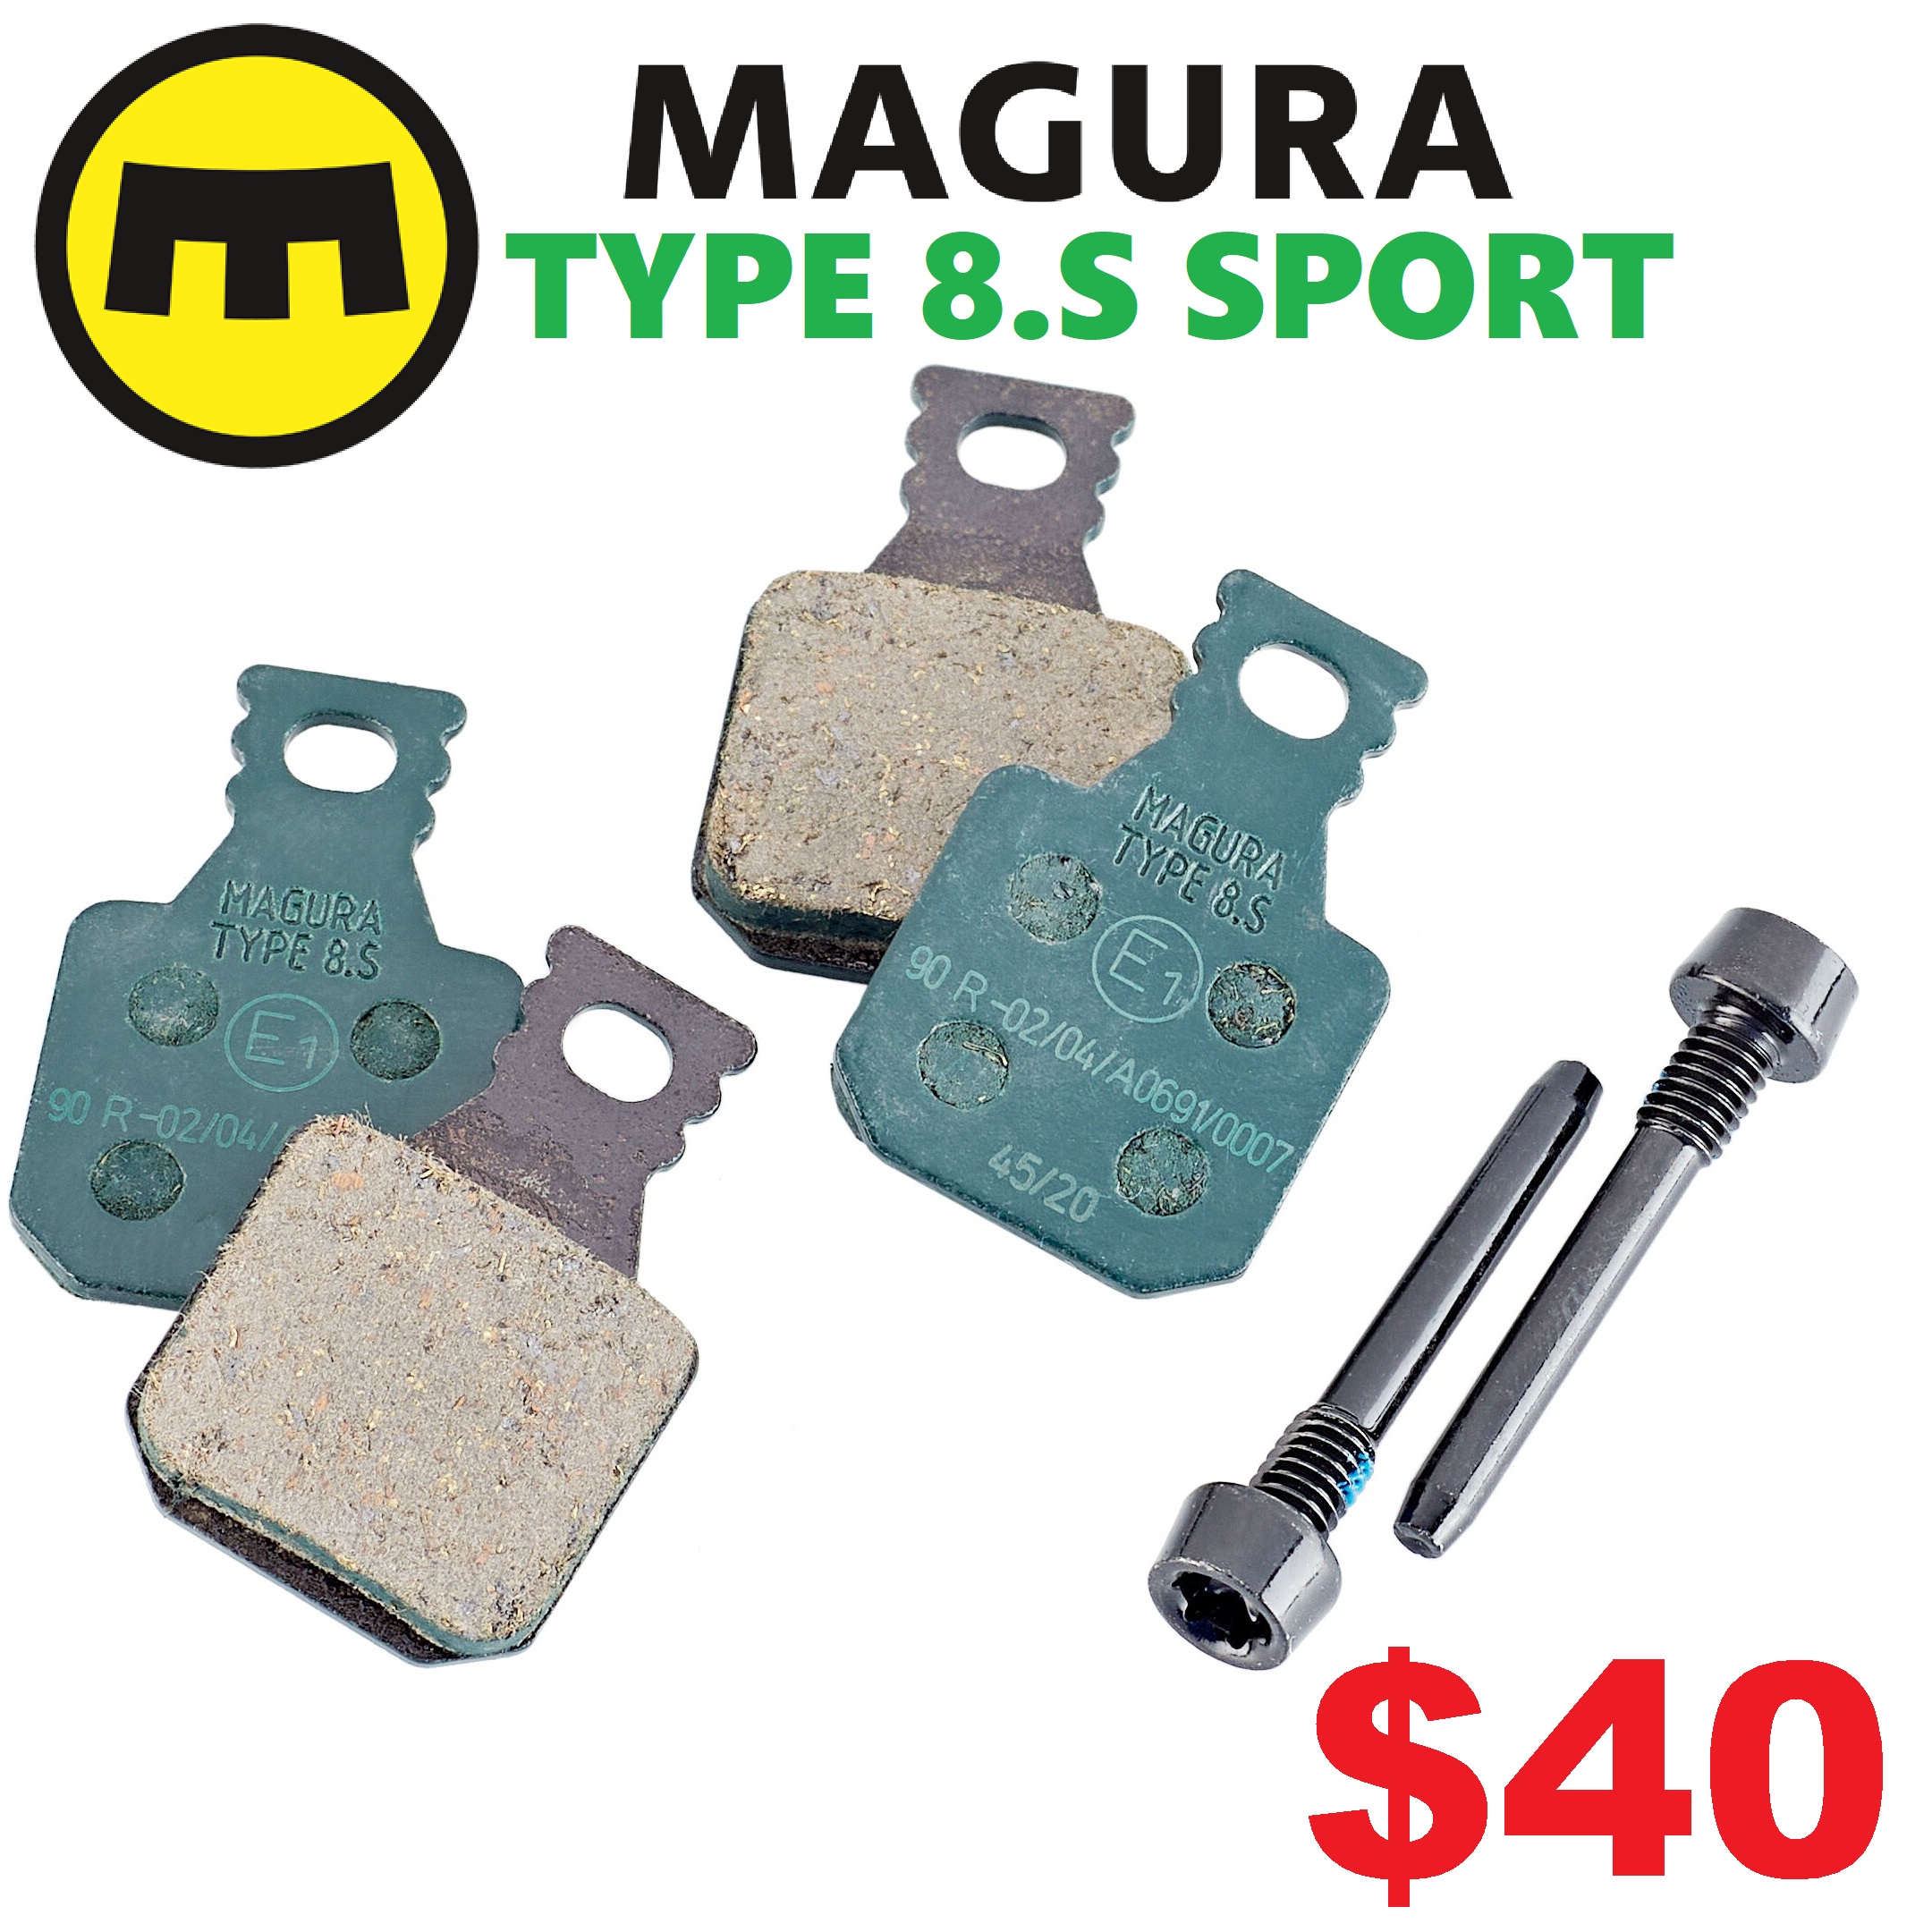 Magura Type 8.S Sport Brake pad for MT5 MT5 Estop MT5e MT7 MT